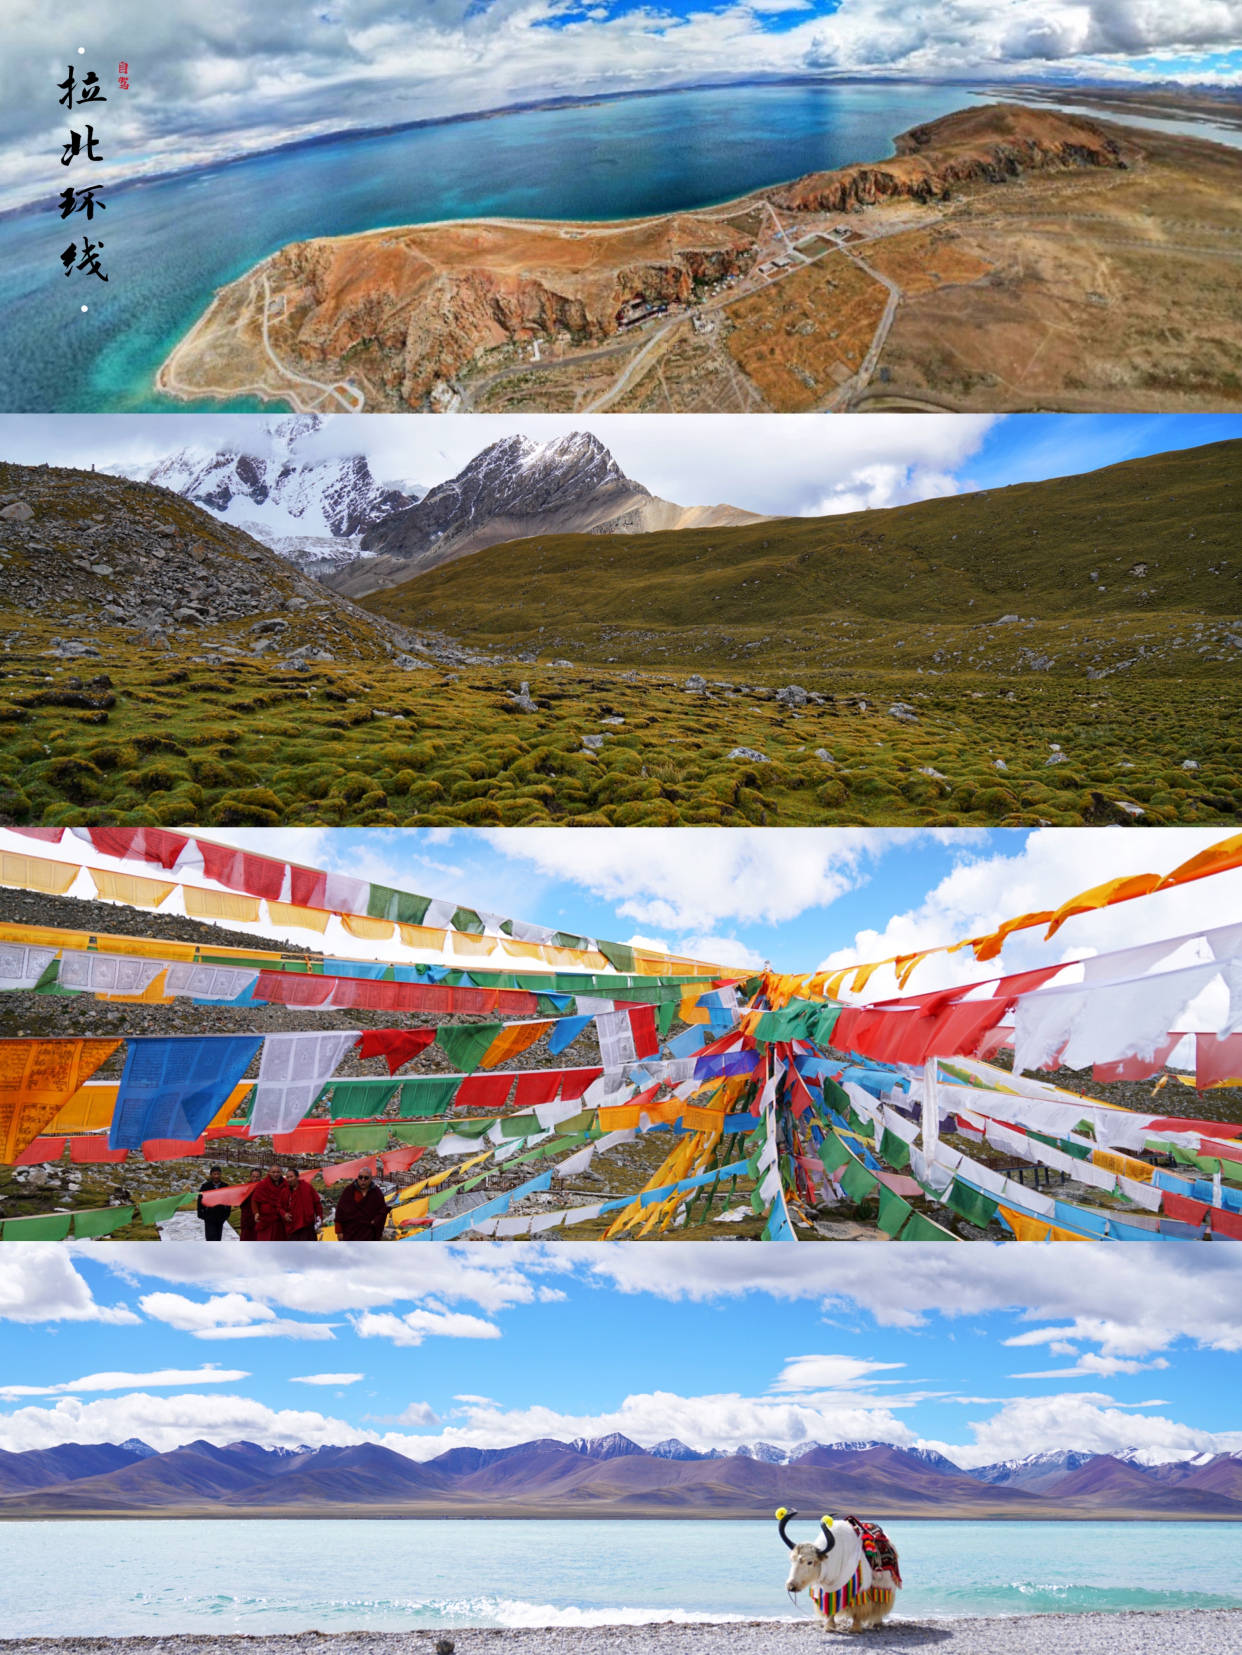 秘境拉萨，壮阔风光，自驾拉北环线，感受青藏高原丰富地貌和人文_手机